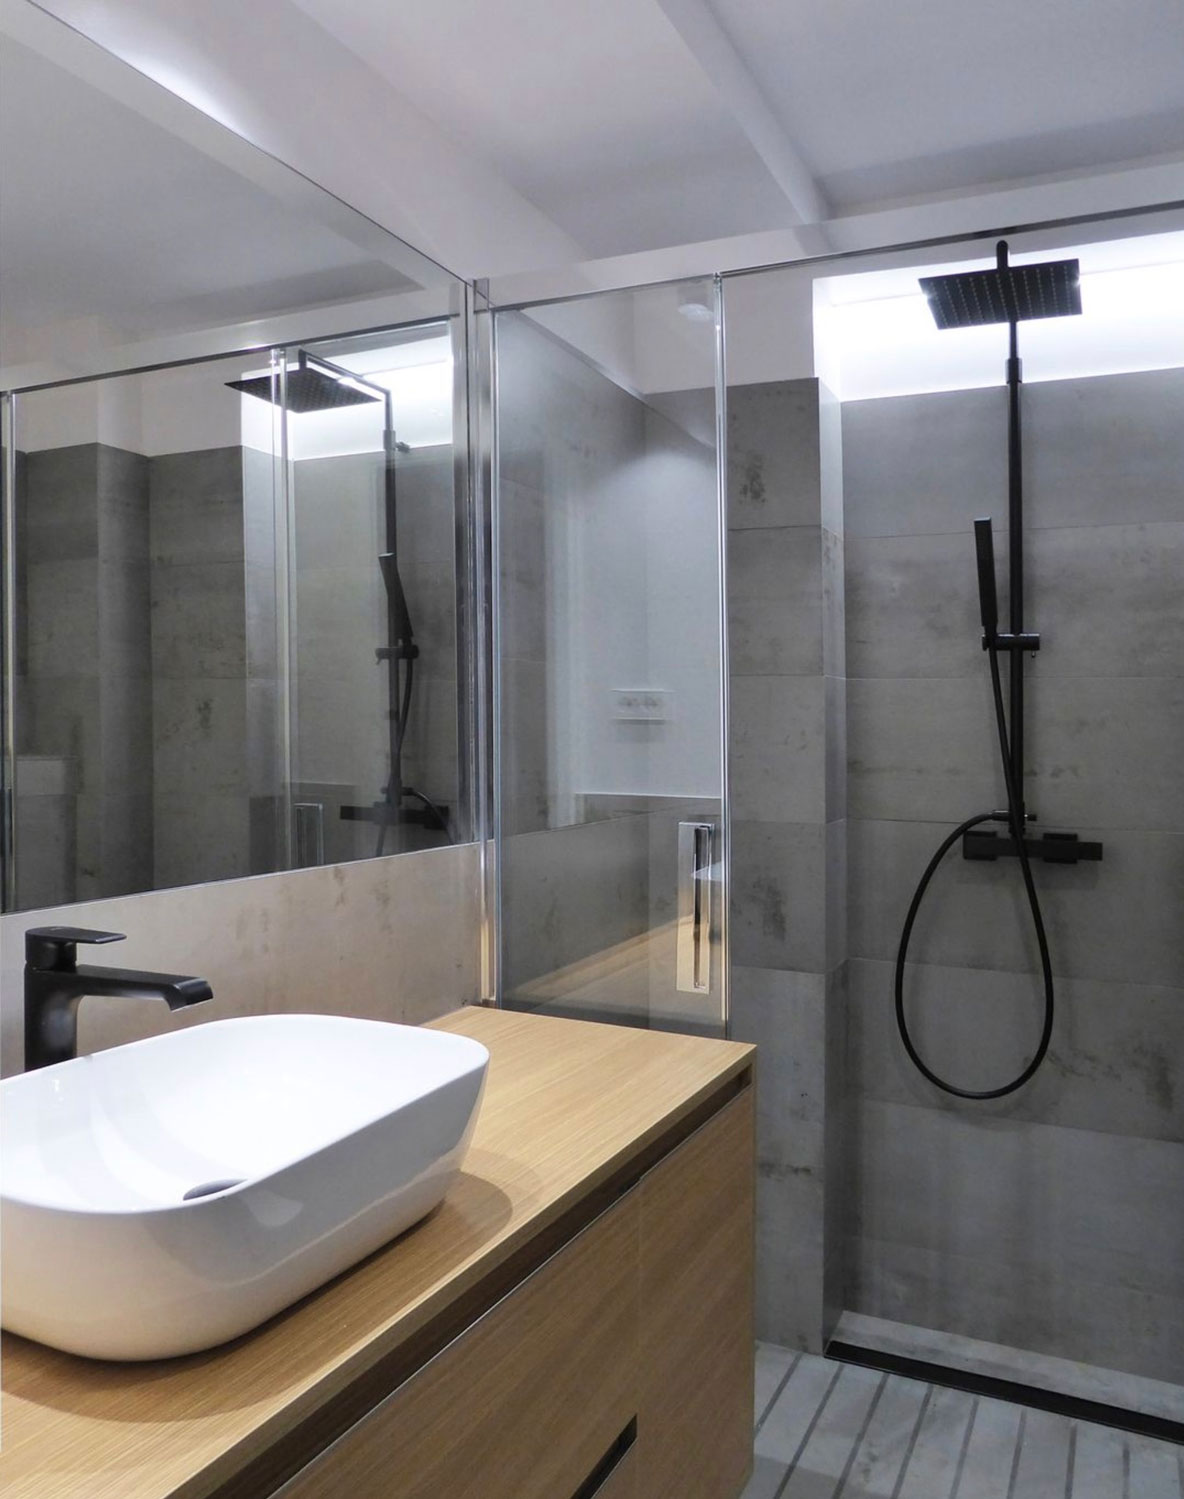 Interior de baño moderno y luminoso. Parte de la habitación con un lavabo  blanco con grifo de agua, estante, ducha y un espejo redondo en la pared  blanco-negro Fotografía de stock 